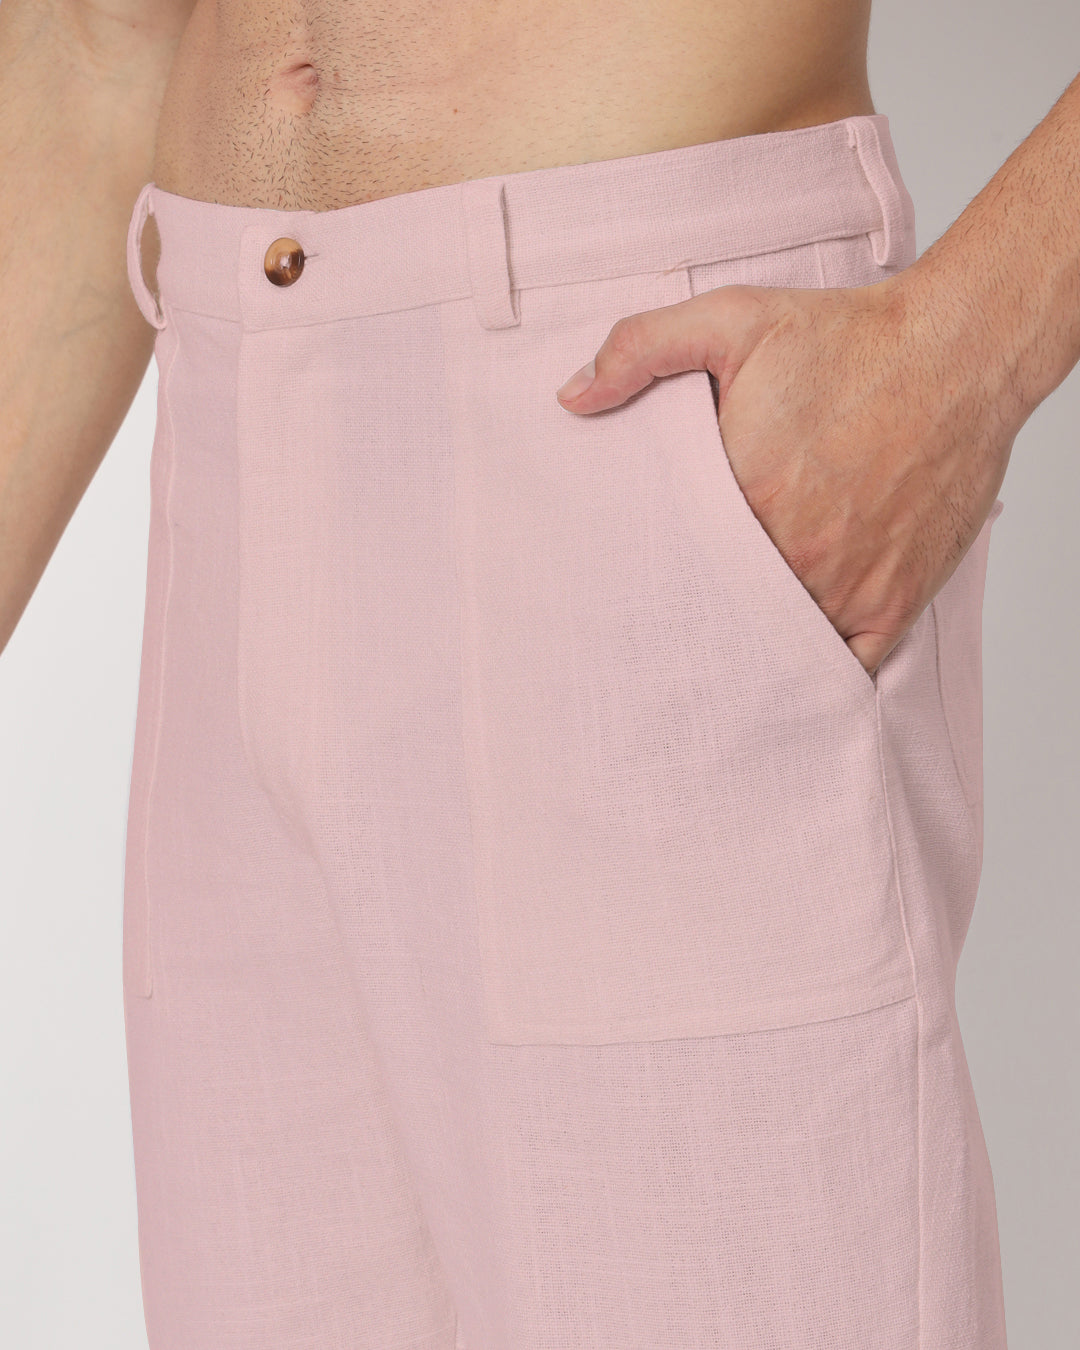 Comfy Ease Fondant Pink Men's Pants